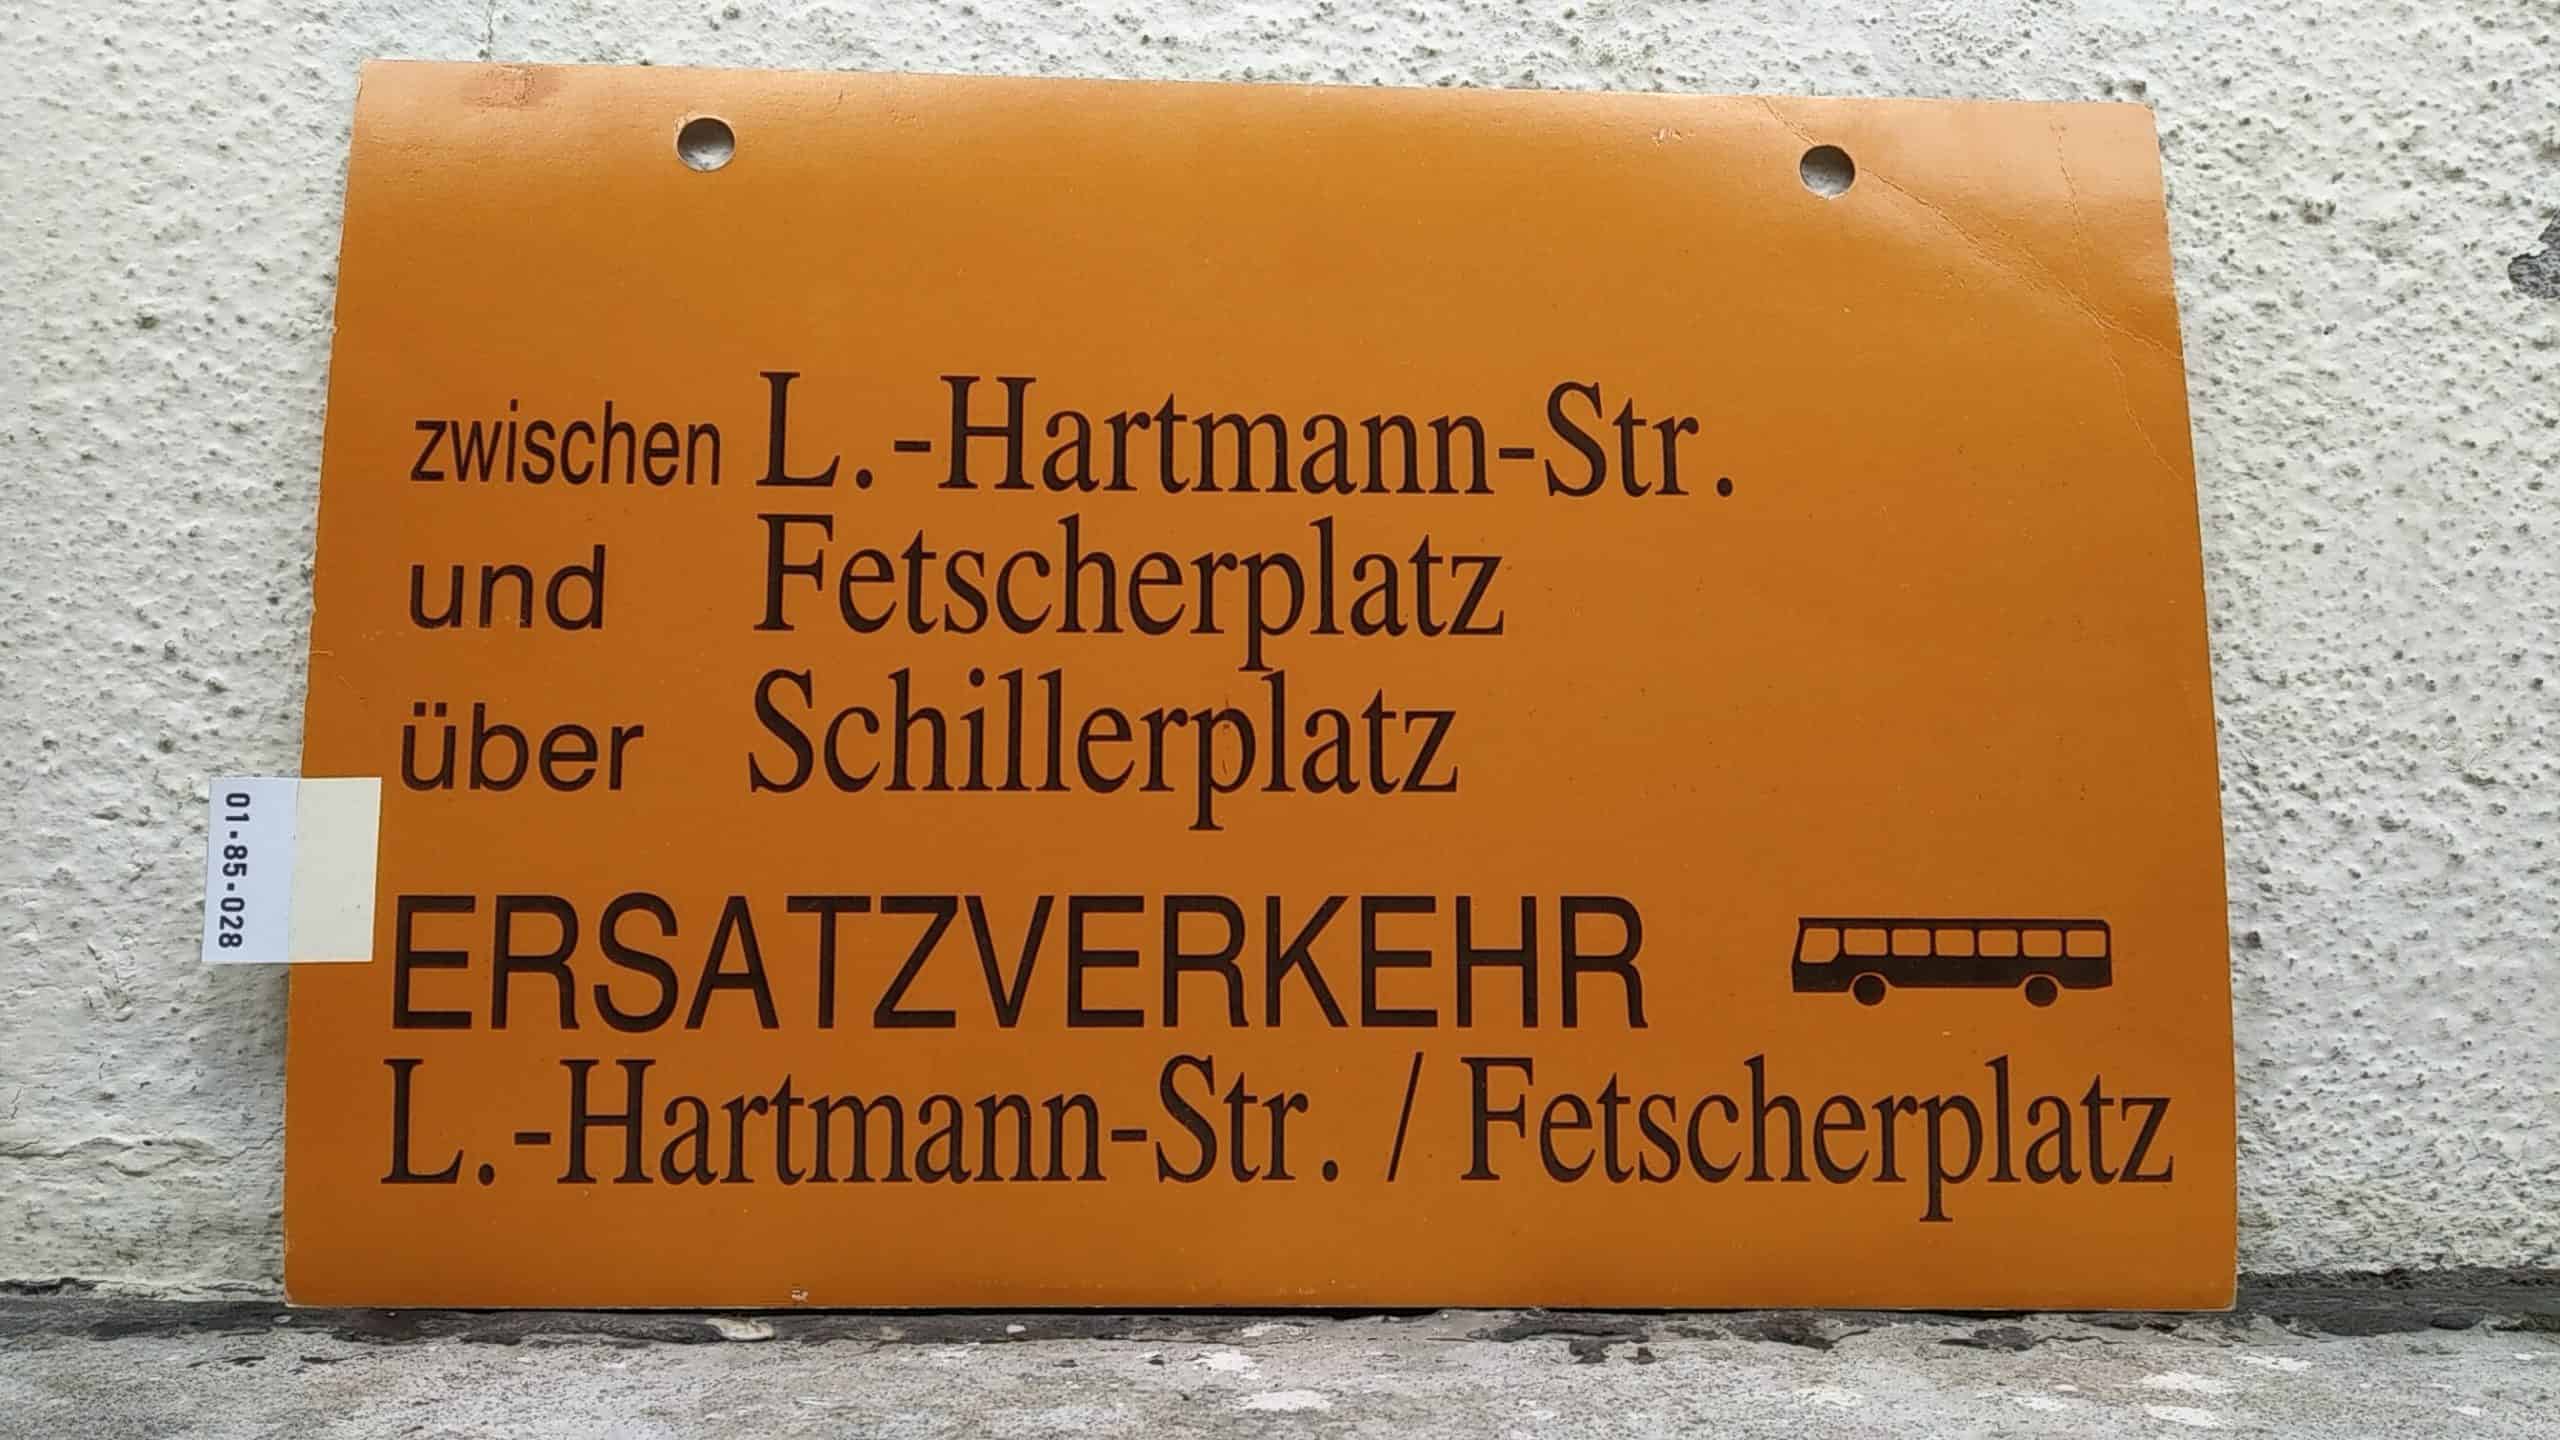 Ein seltenes Straßenbahn-Umleitungsschild aus Dresden: zwischen L.-Hartmann-Str. und Fetscherplatz über Schillerplatz ERSATZVERKEHR [Bus neu] L.-Hartmann-Str. / Fetscherplatz